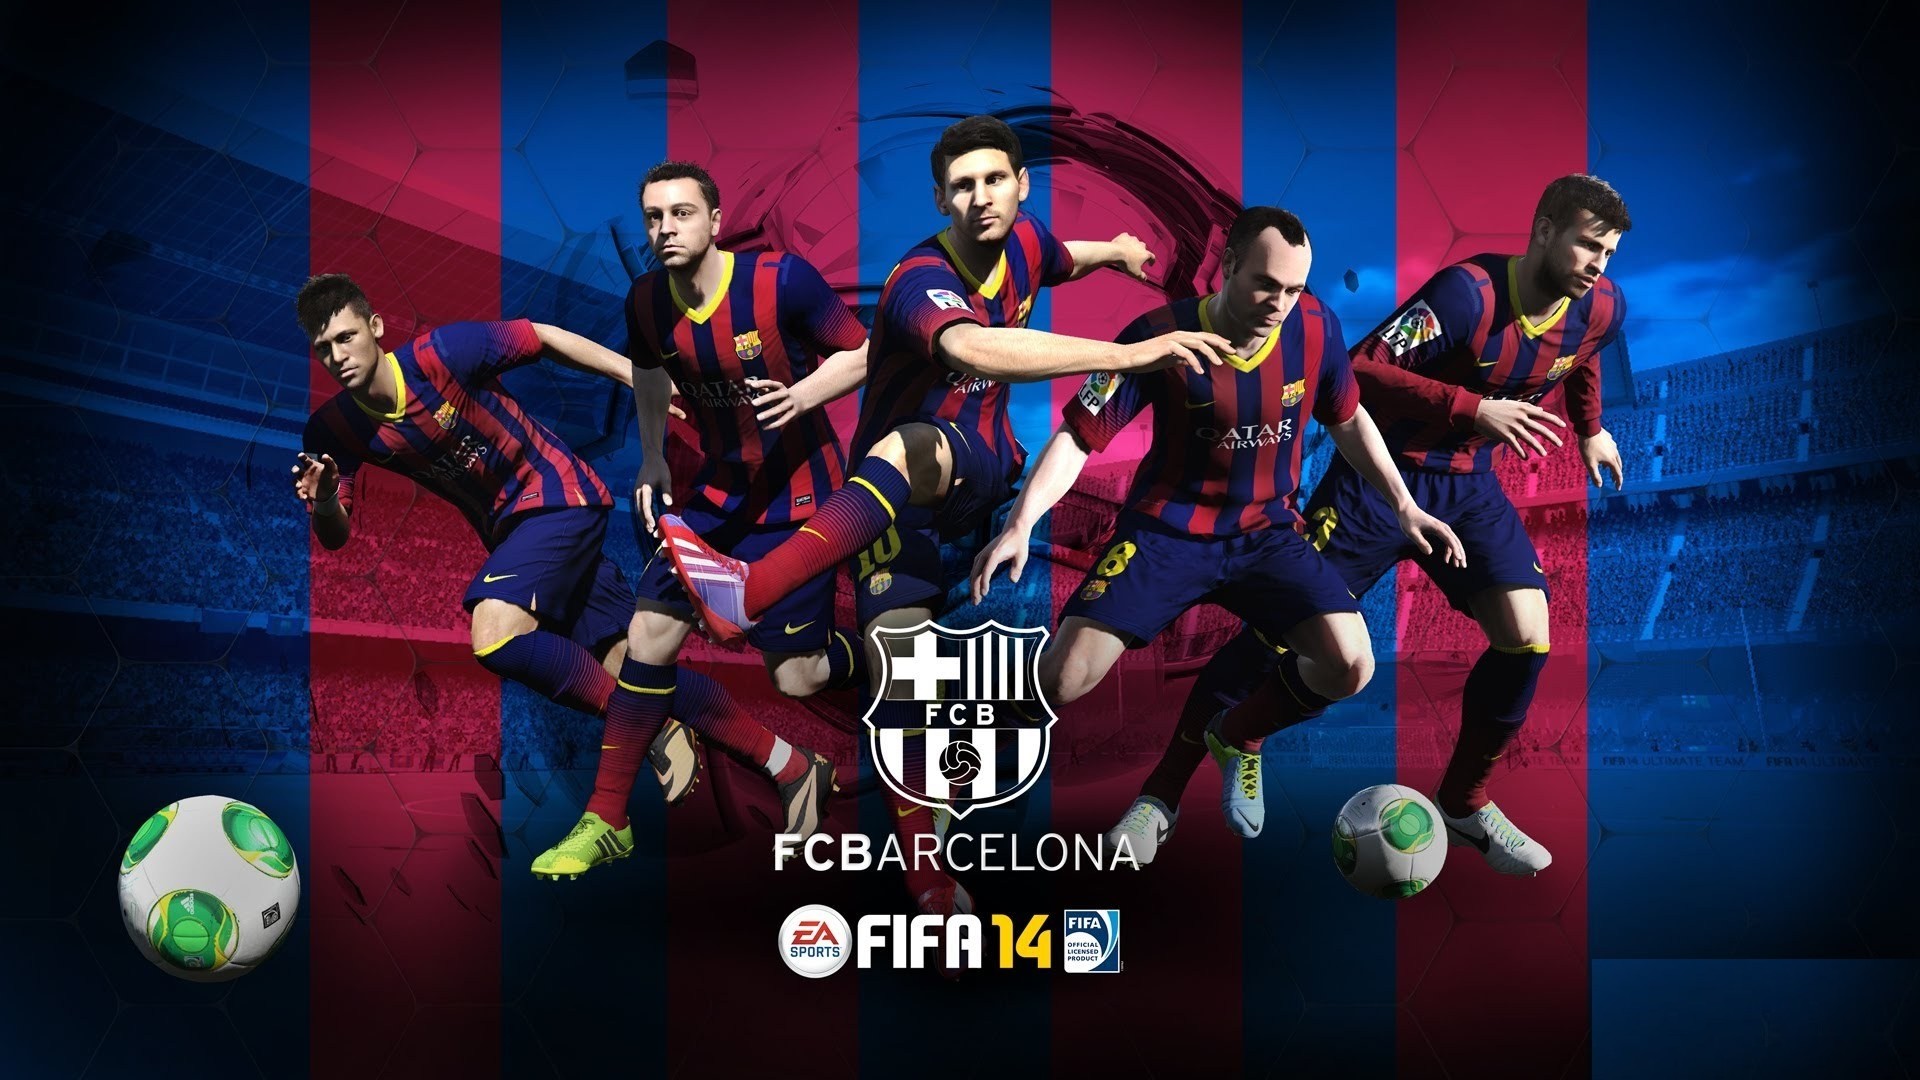 1920x1080 Net FC Barcelona Wallpapers HD | PixelsTalk.